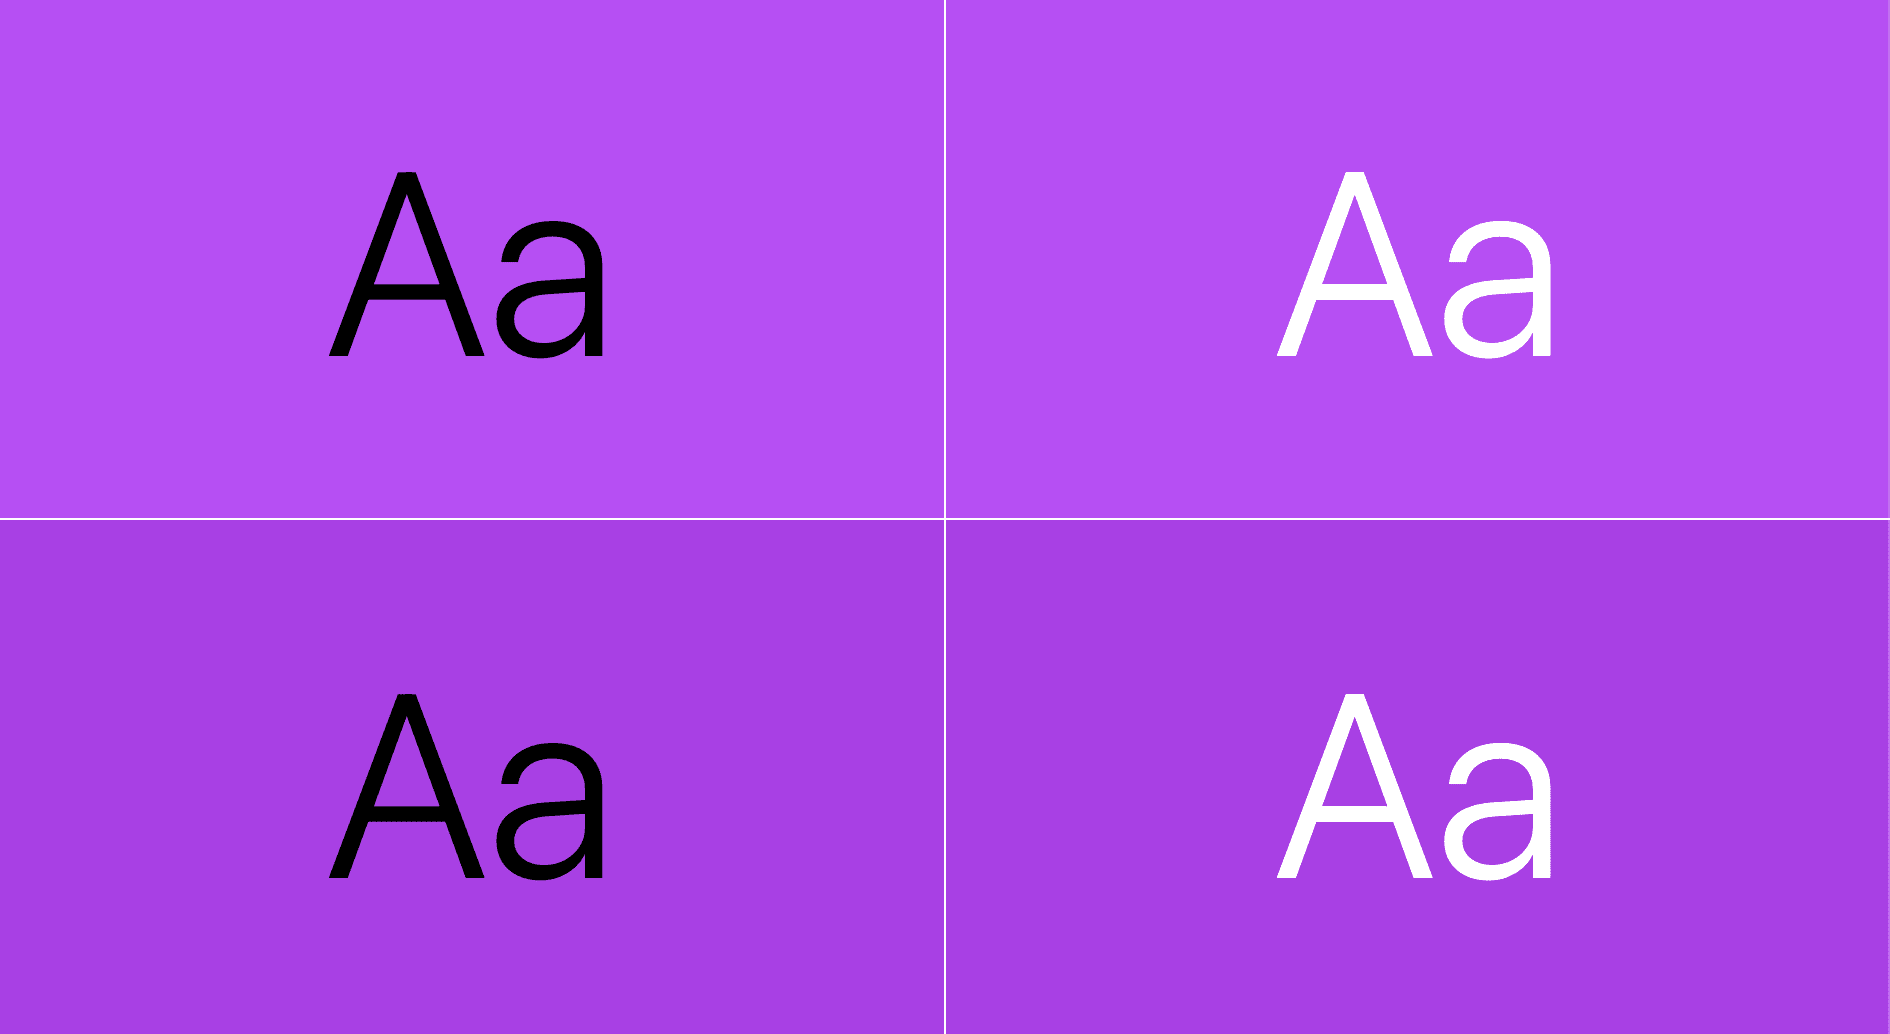 Tekst jest wyświetlany na fioletowym kolorze: jedna para to czarny tekst na fioletowym, a drugi biały tekst na fioletowym.